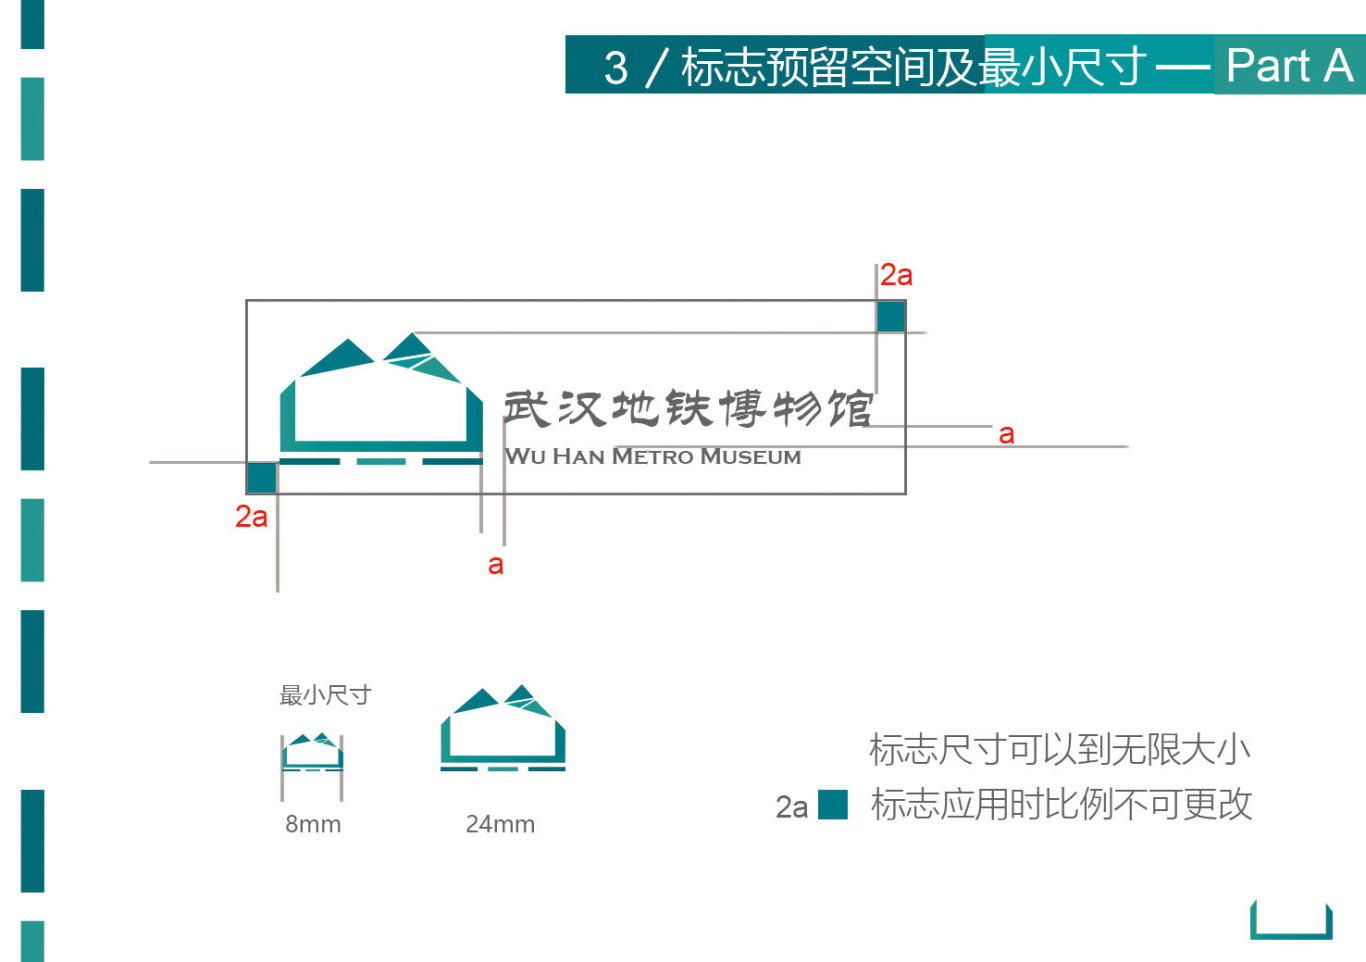 武汉地铁博物馆视觉识别设计图4